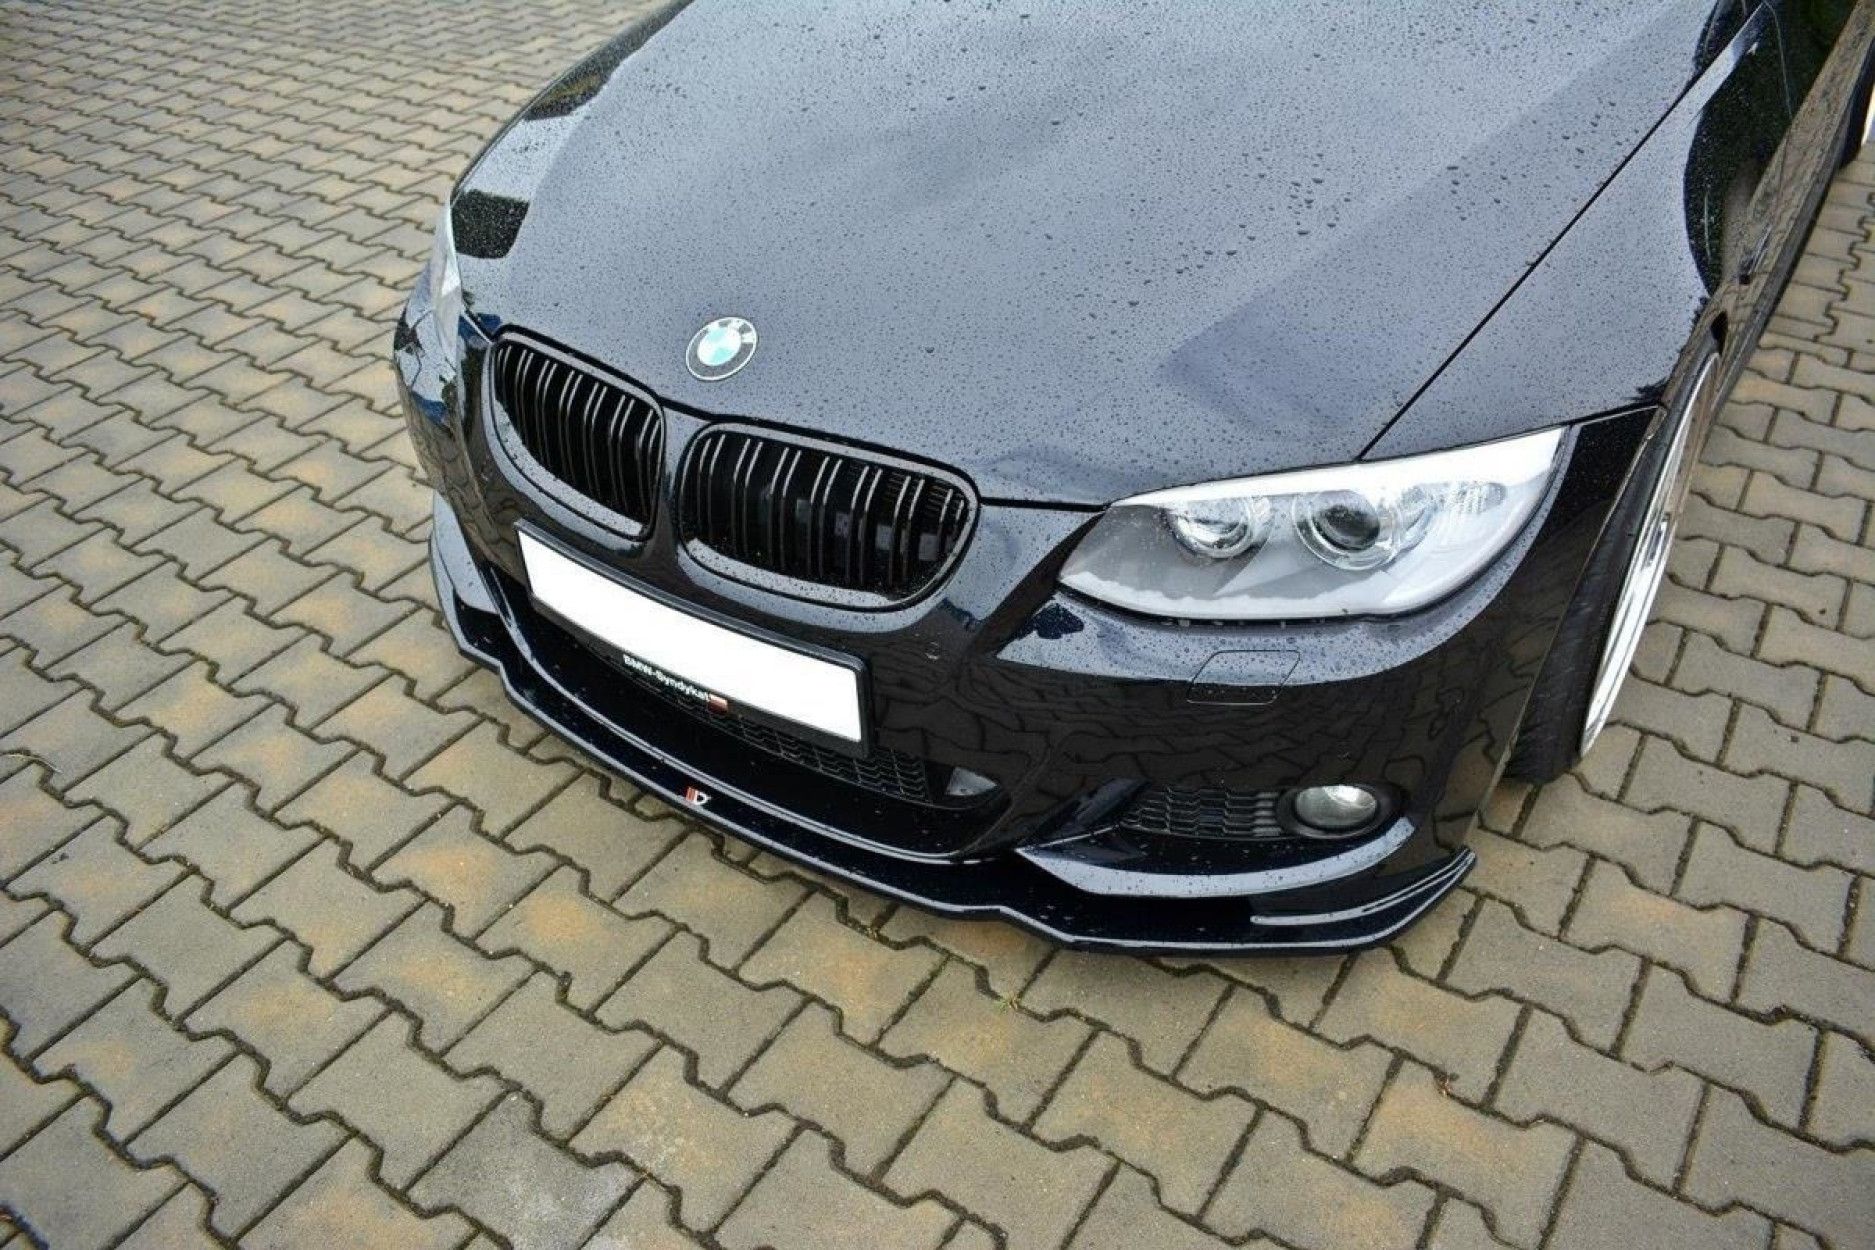 Maxton Design ABS Frontlippe V.2 für BMW 3er E92 M3 M-Paket Facelift schwarz hochglanz